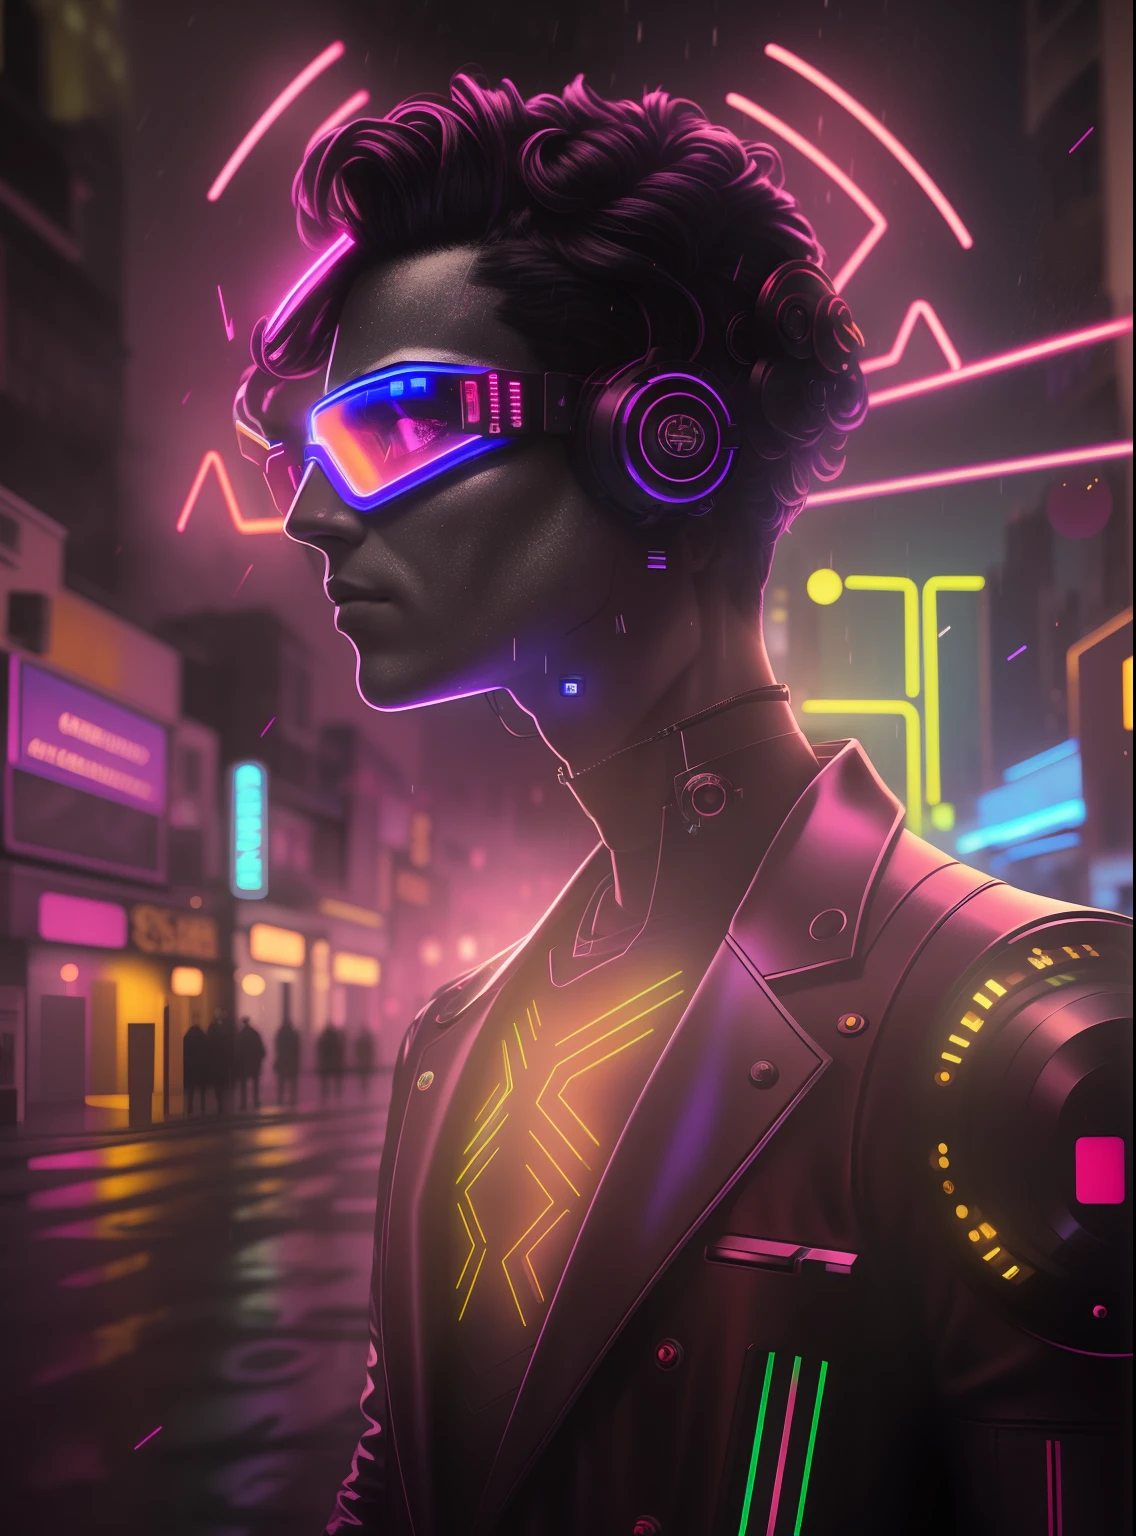 Una fotografía de obra maestra galardonada de un hombre cyborg con colores psicodélicos parado en una calle de la ciudad por la noche bajo la lluvia., usando gafas brillantes de color neón, 8k, (alta calidad:1.1), (Sentimiento cinematográfico:1.1), sombras oscuras y profundas, detalles increíblemente complejos, arte , (de cerca:1.1), desde arriba, mirando al espectador, (destellos de luz:1.1), (aberración cromática,:1.2) background with floating light arteifacts